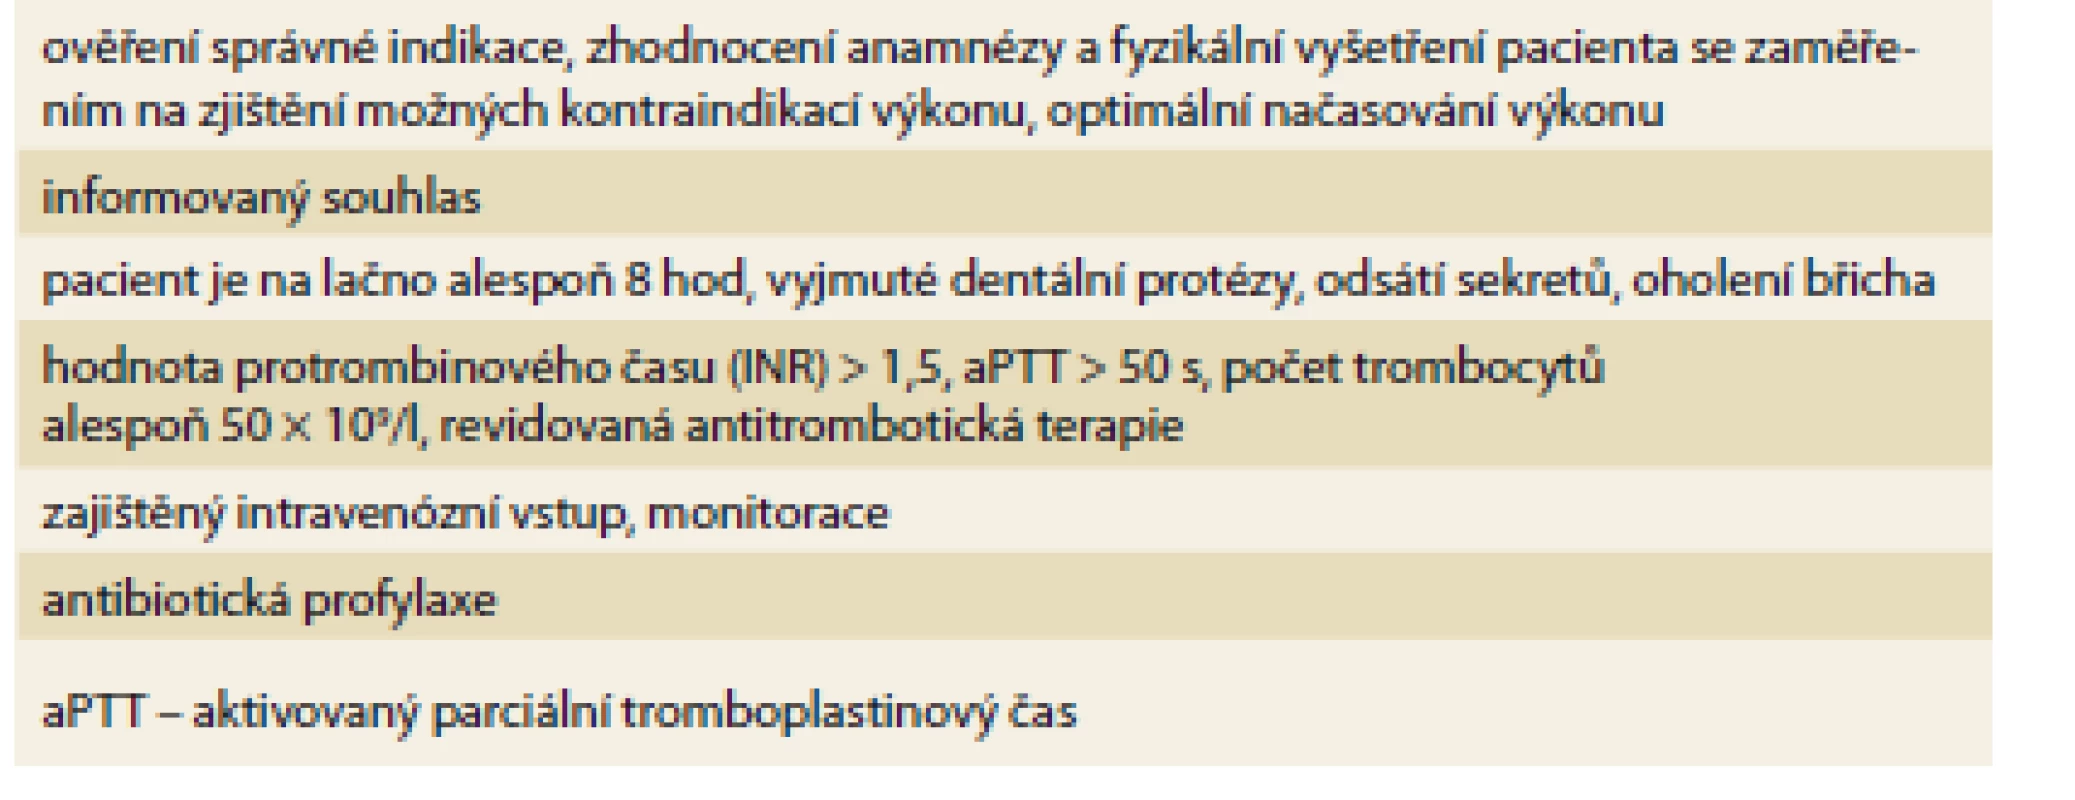 Souhrn opatření před zavedením perkutánní endoskopické
gastrostomie.<br>
Tab. 1. Summary of measures prior to percutaneous endoscopic gastrostomy
introduction.